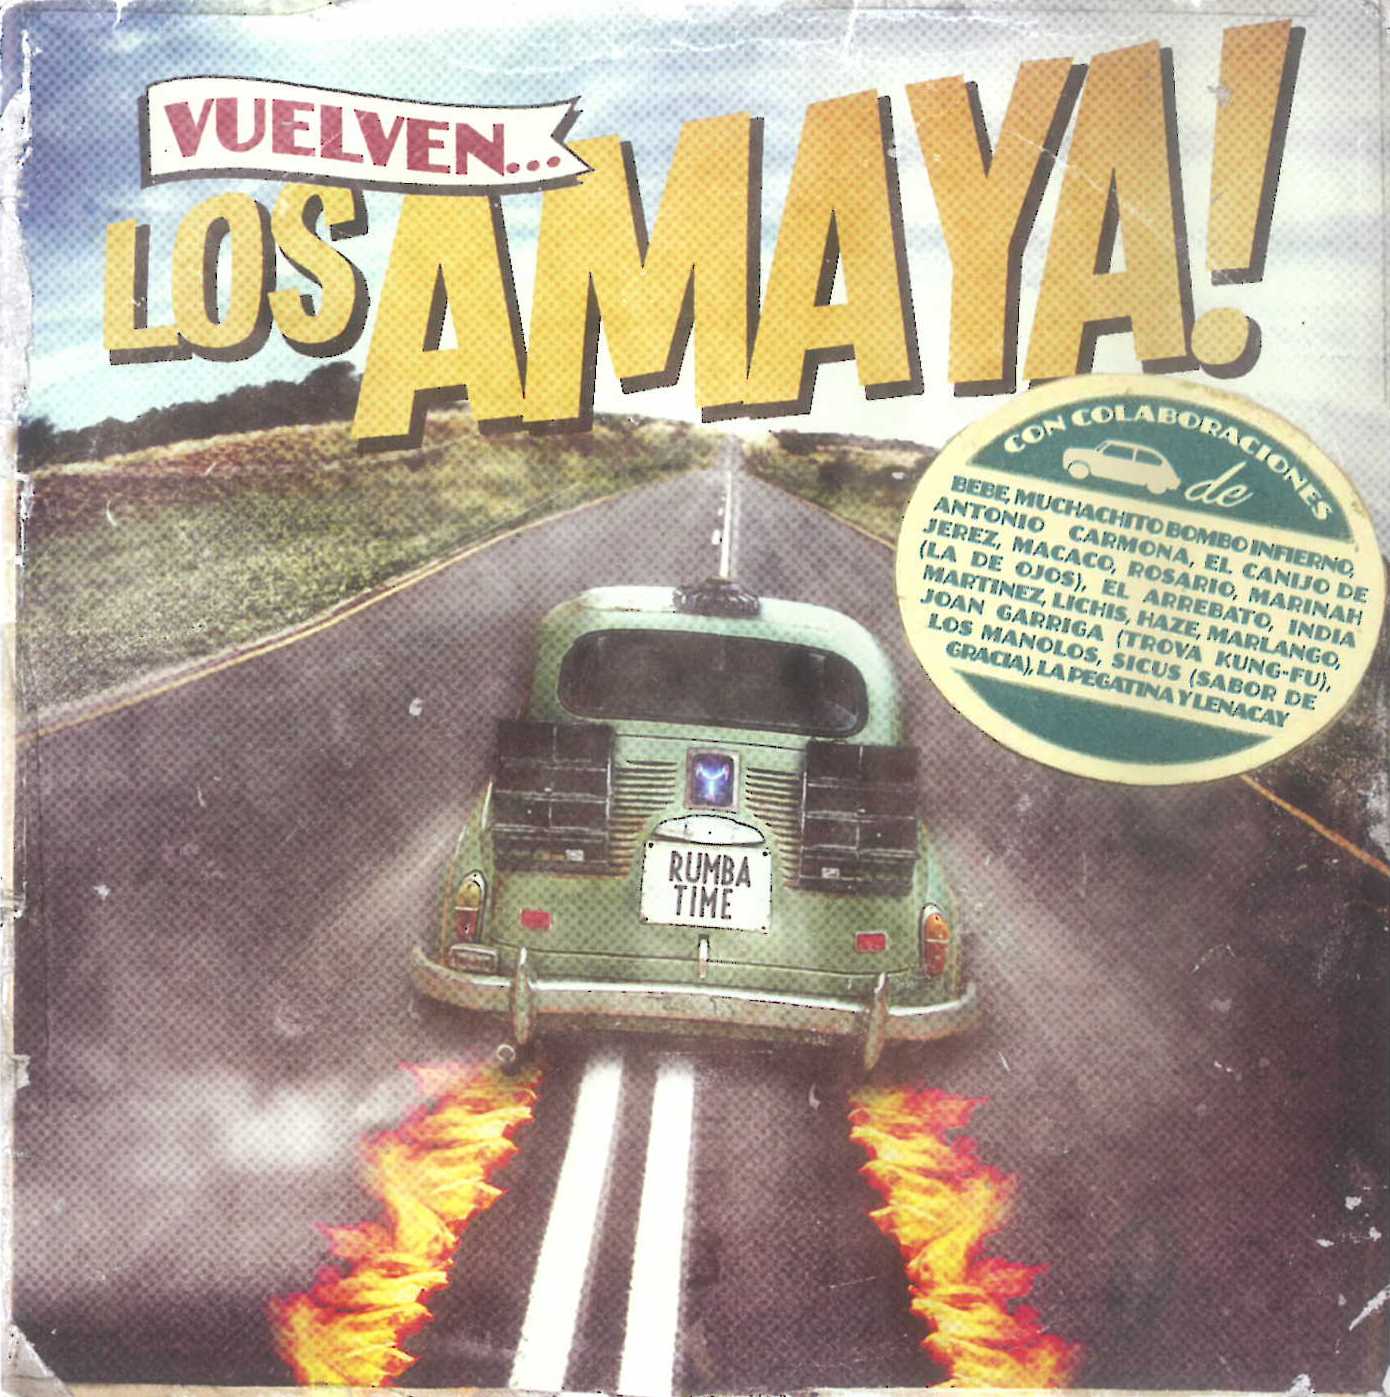 Vuelven... Los Amaya!